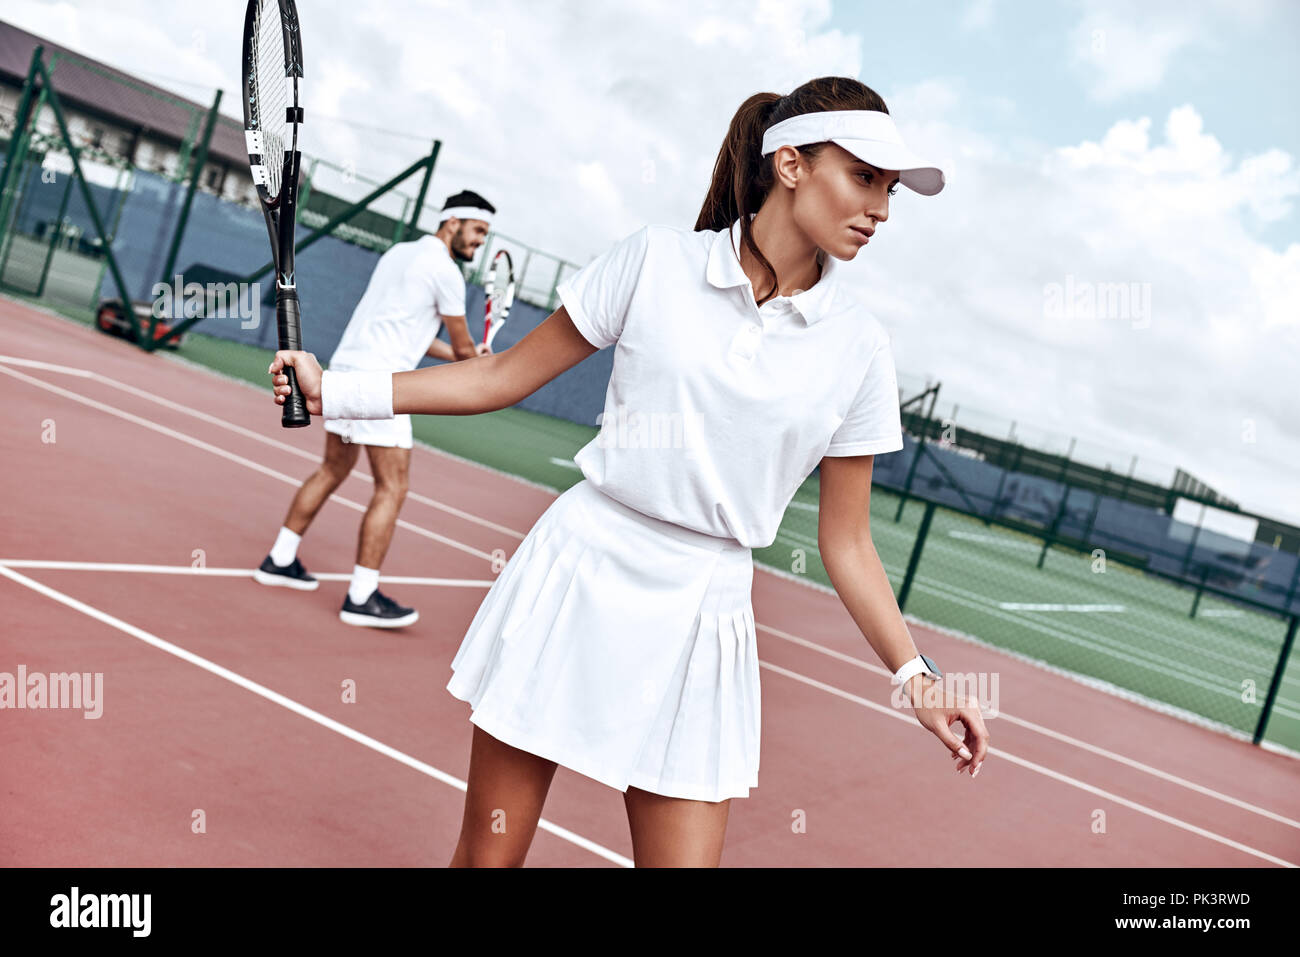 Sie spielen wie eine Mannschaft. Schöne junge Frau mit Tennisschläger und weg schauen beim Stehen auf einem Tennisplatz und mit Mann im Hintergrund Stockfoto